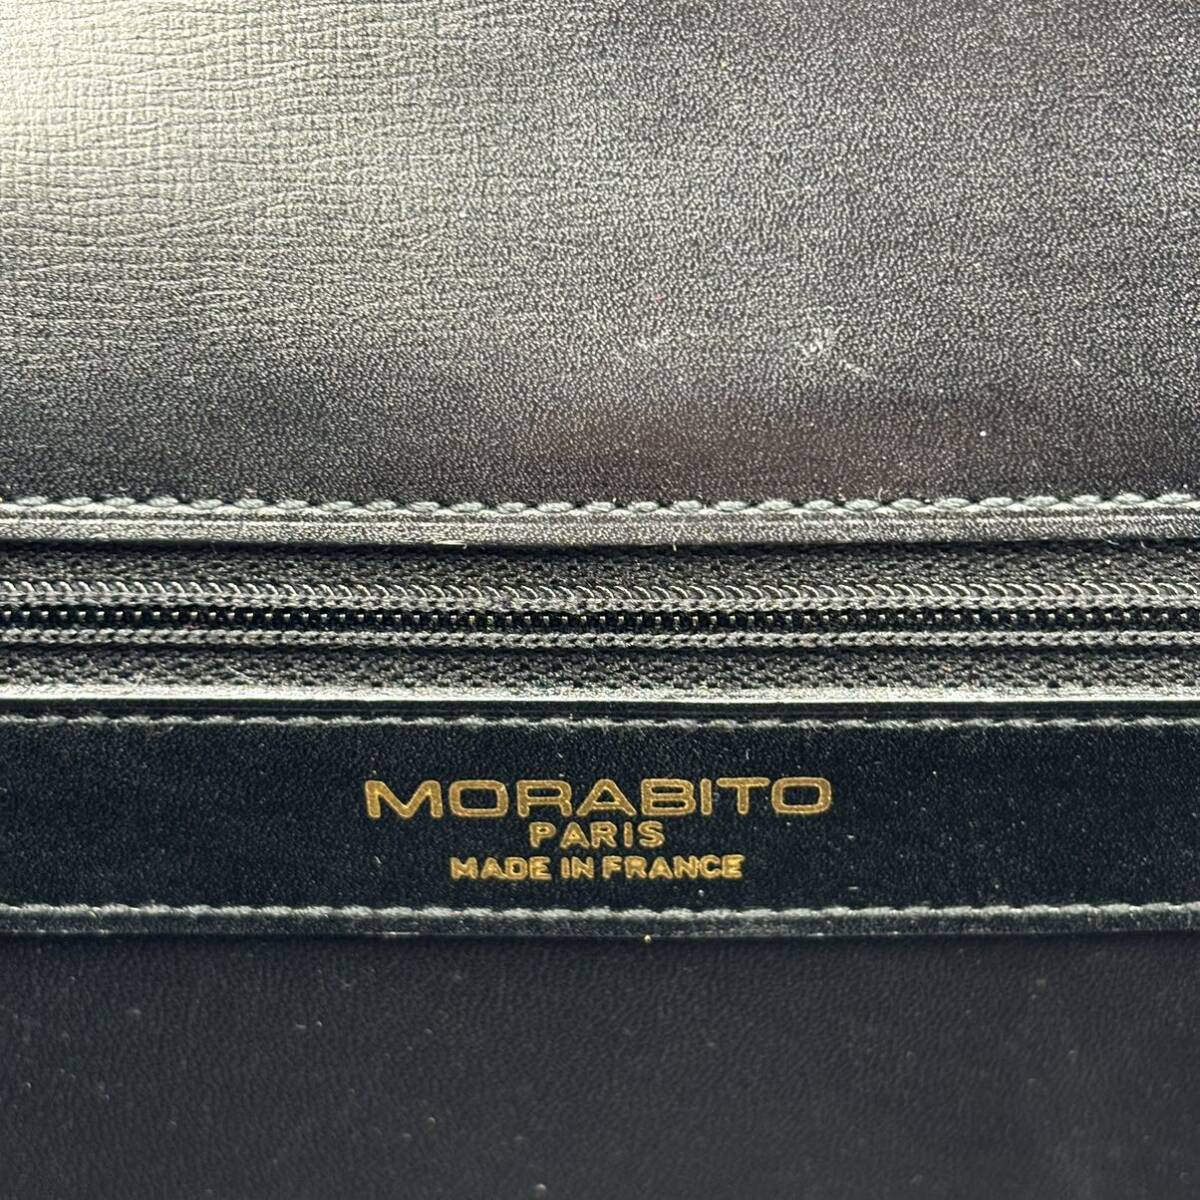 240329-MORABITO モラビト クロコダイルレザー ハンドバッグ 本革 高級 ゴールド金具 ブラック 黒 レディース 鞄の画像8